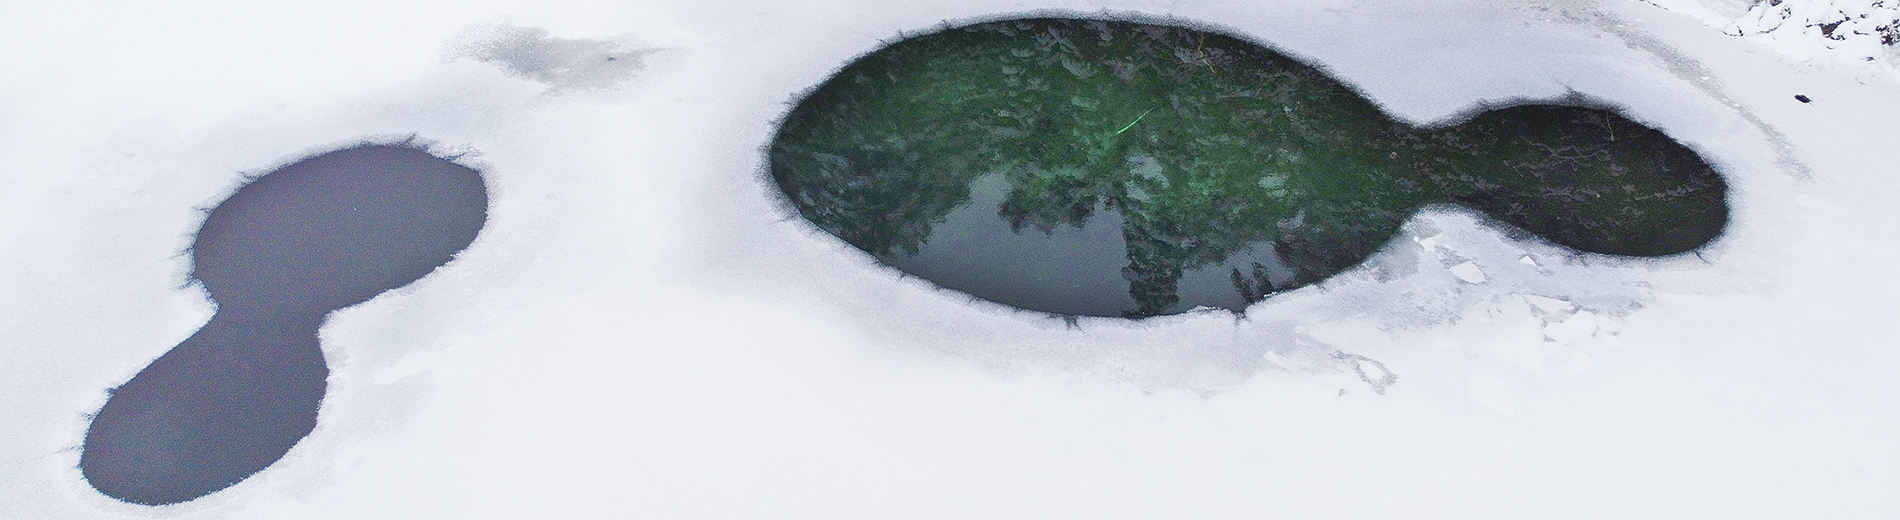 Lumemaailm: Äntu järved, Koeru, Aegviidu